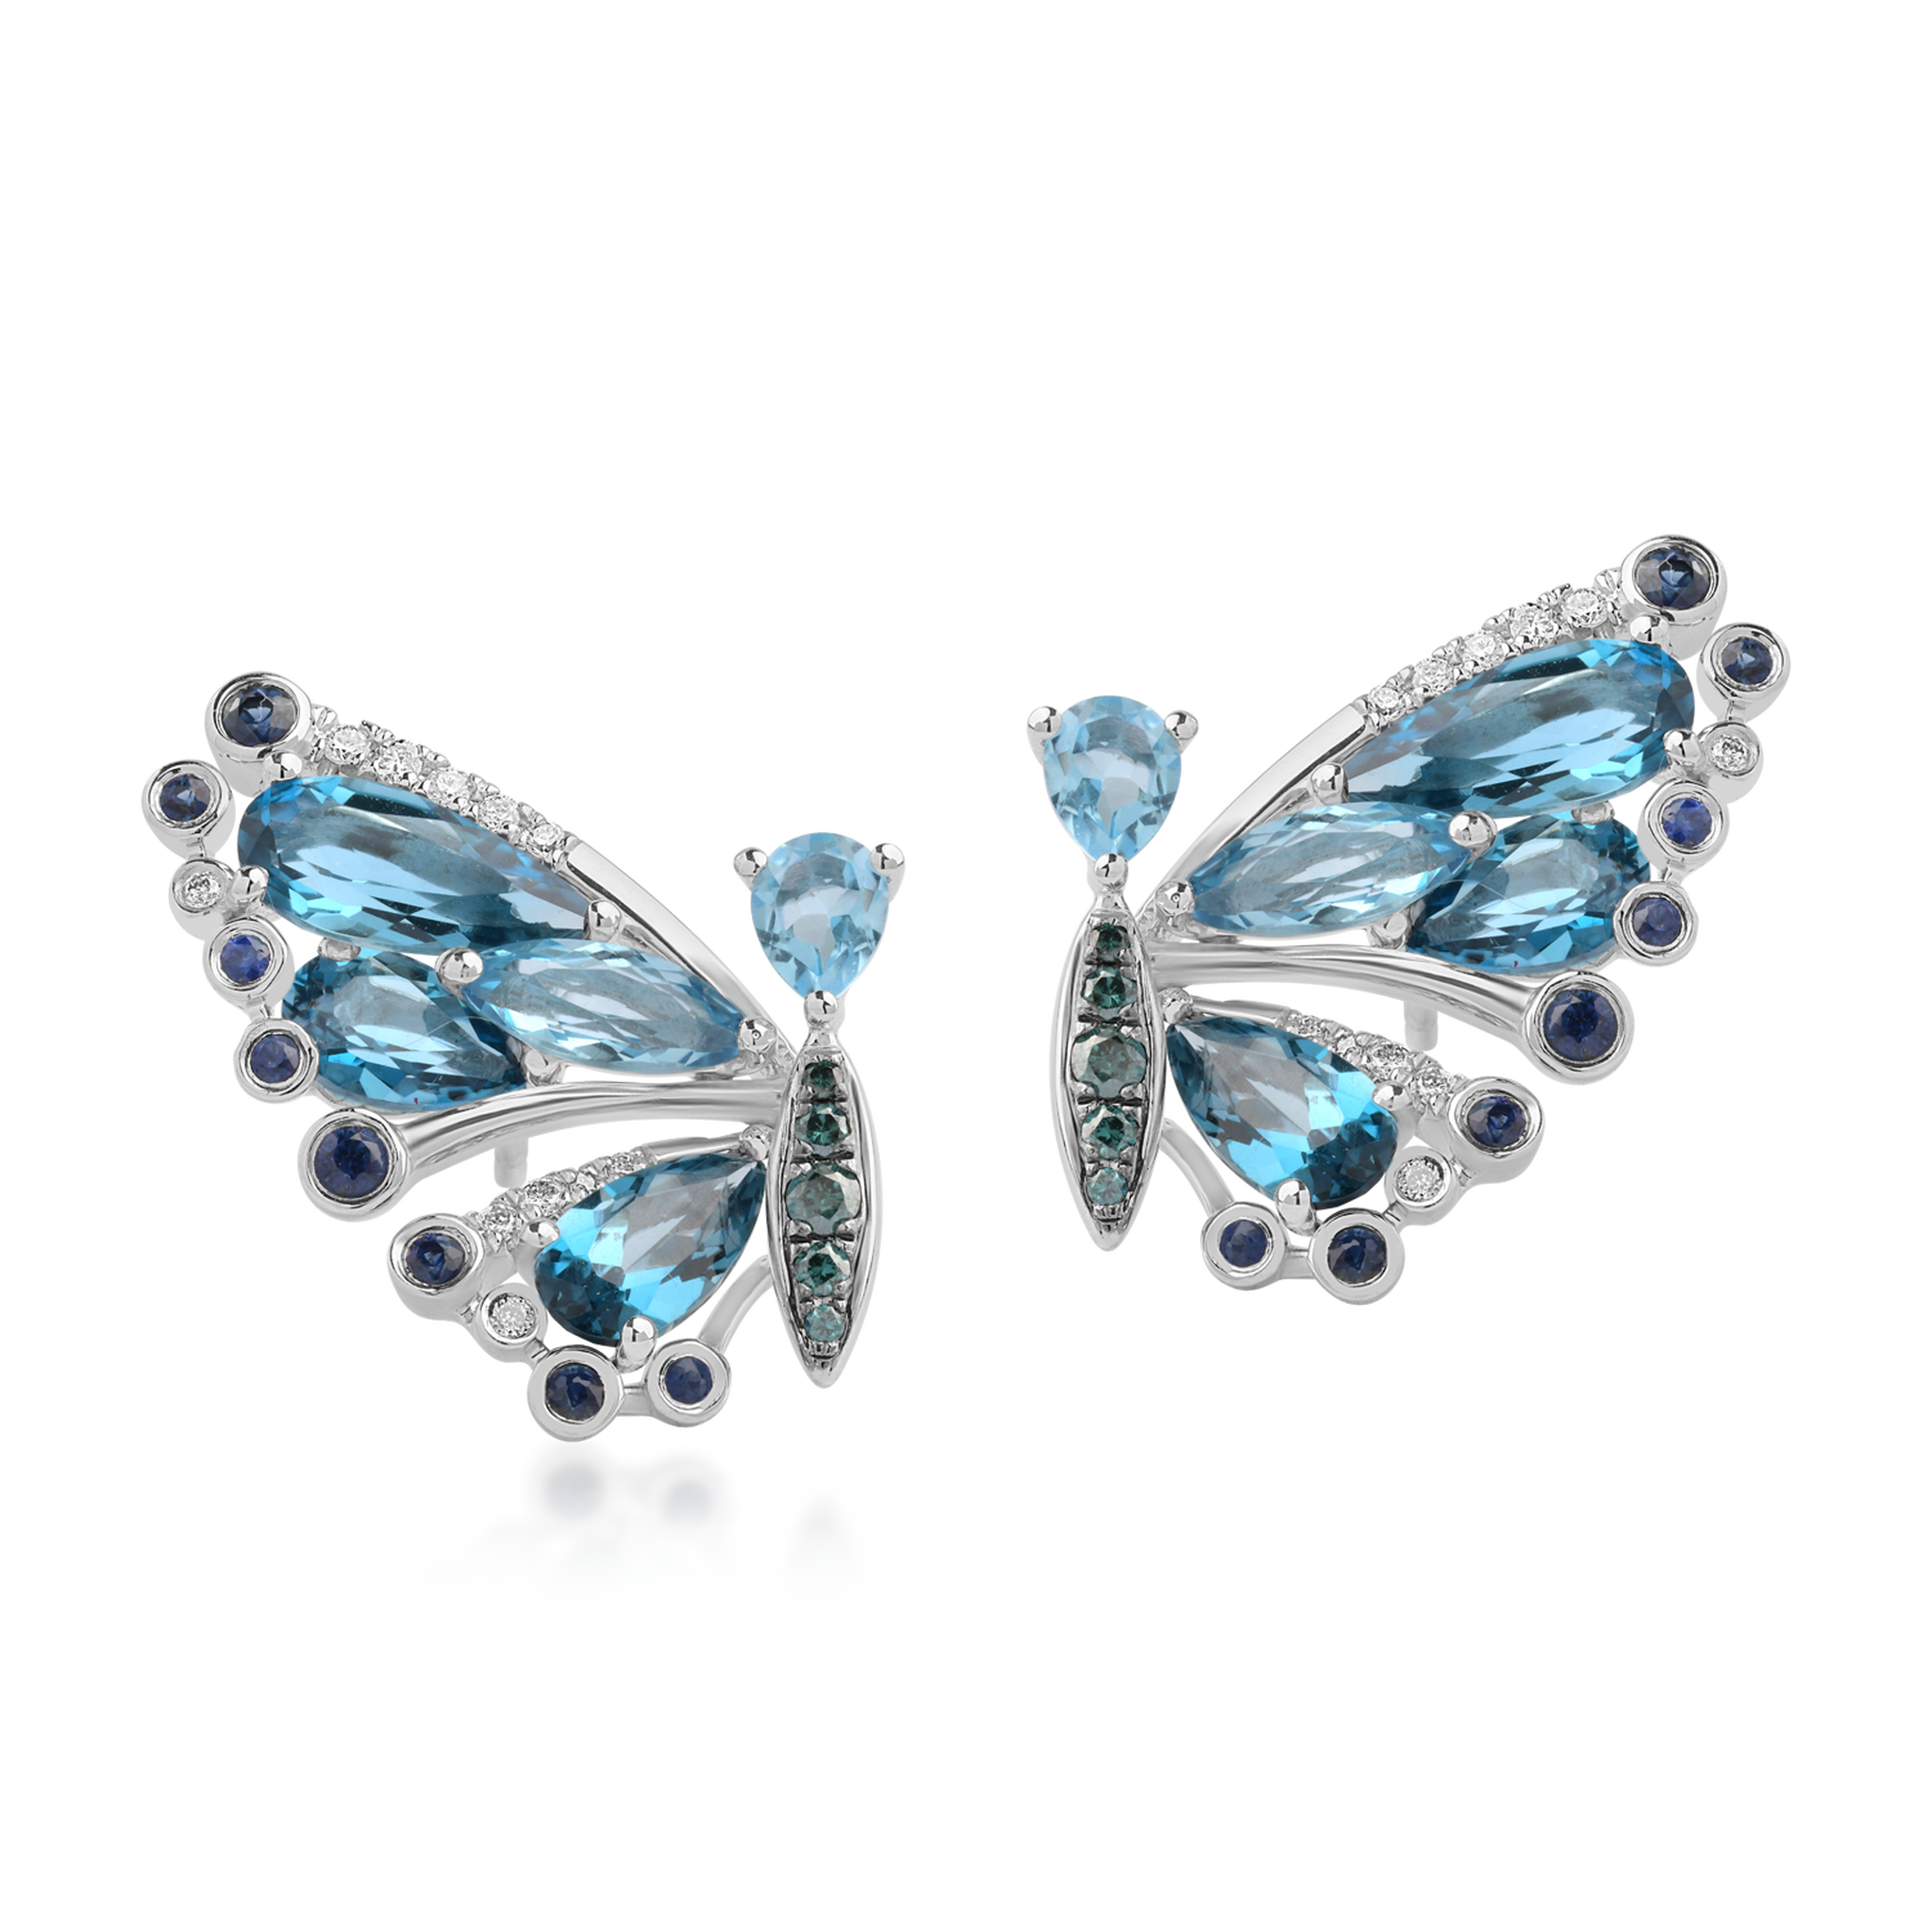 18K fehérarany 5,53 karátos drágakövekkel és féldrágakövekből készült pillangós fülbevalókkal